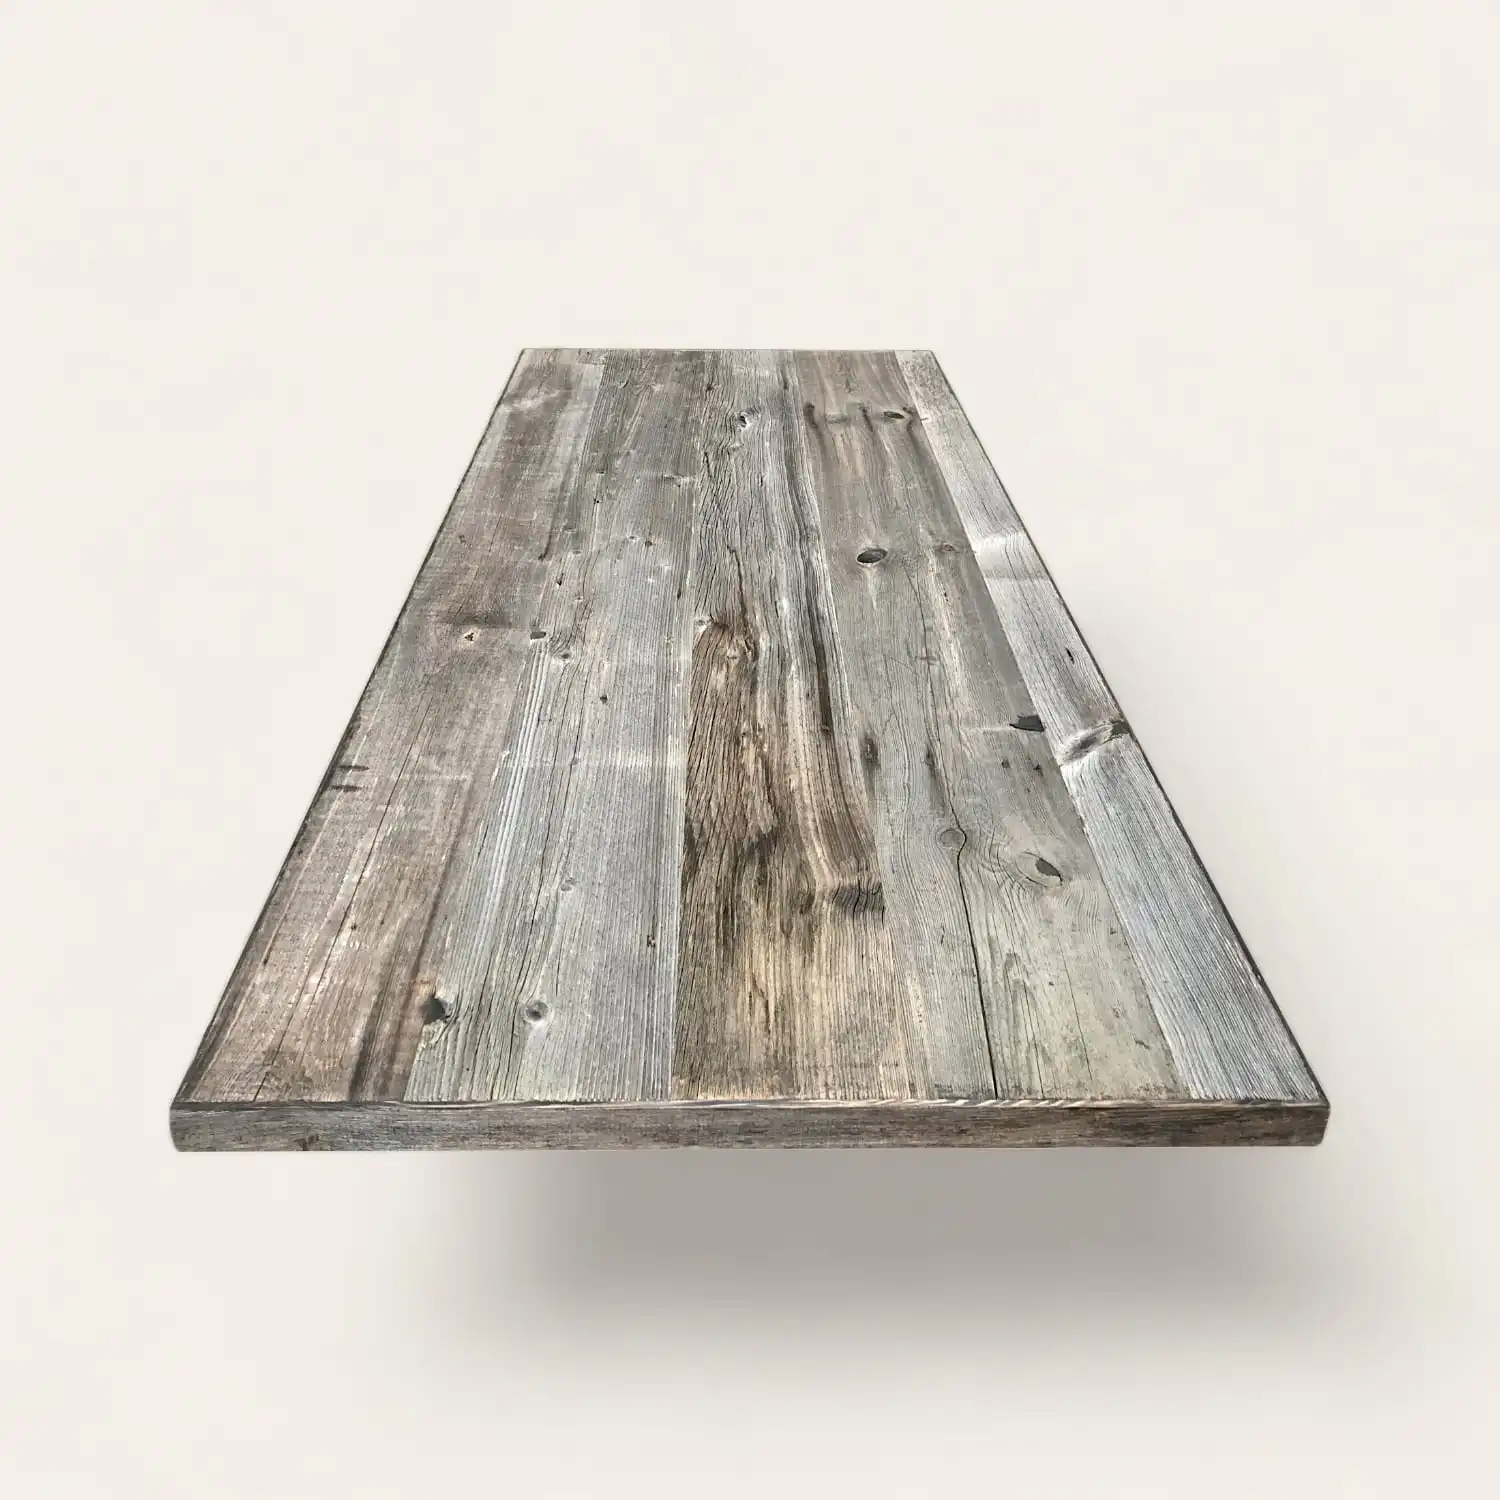  Une table en bois rustique avec un plateau en bois sur fond blanc. 